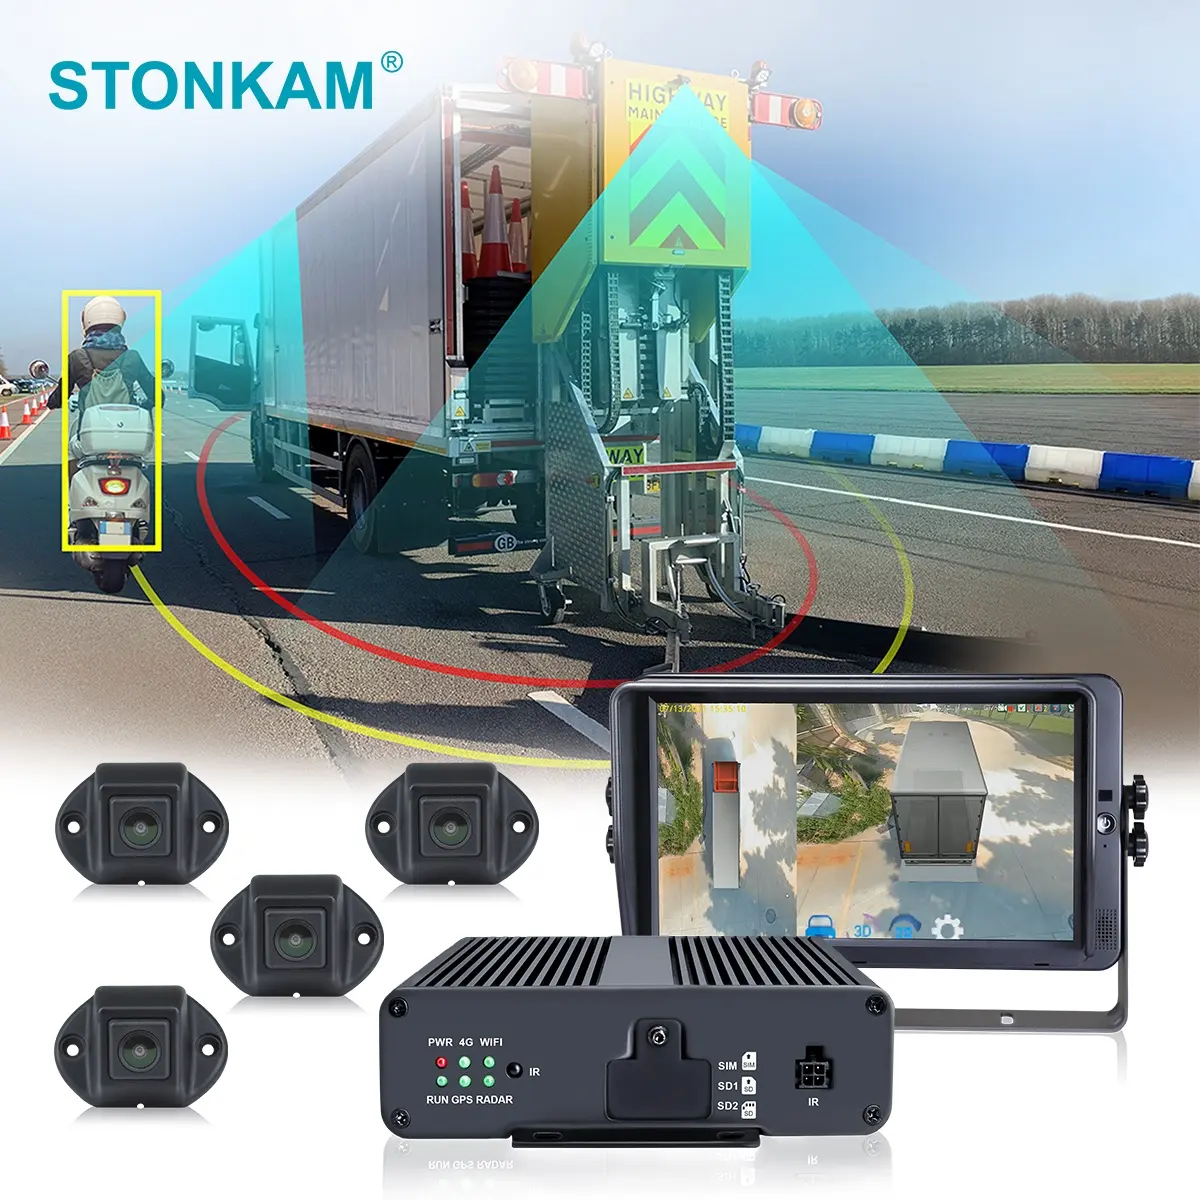 STONKAM 3D HD 360-Grad-LKW-Surround-View Auto kamera überwachungs system Heavy Duty Truck mit Parks ensor für Schulbusse